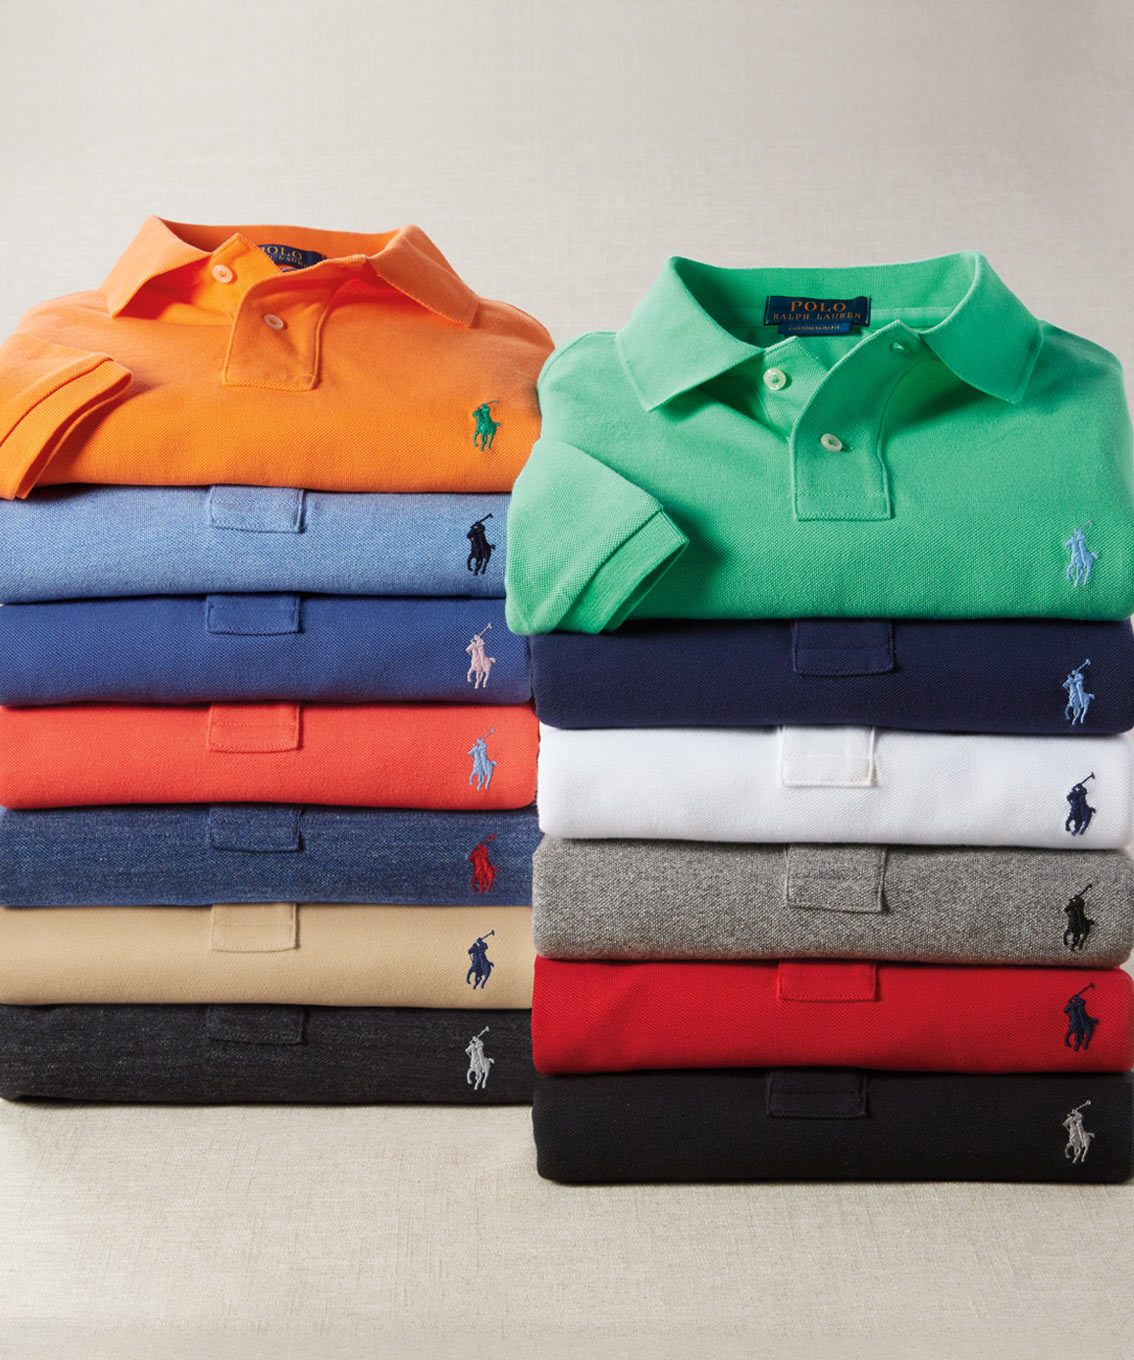 Men's 100% Cotton Short Sleeve Pique Polo Shirt - Quality